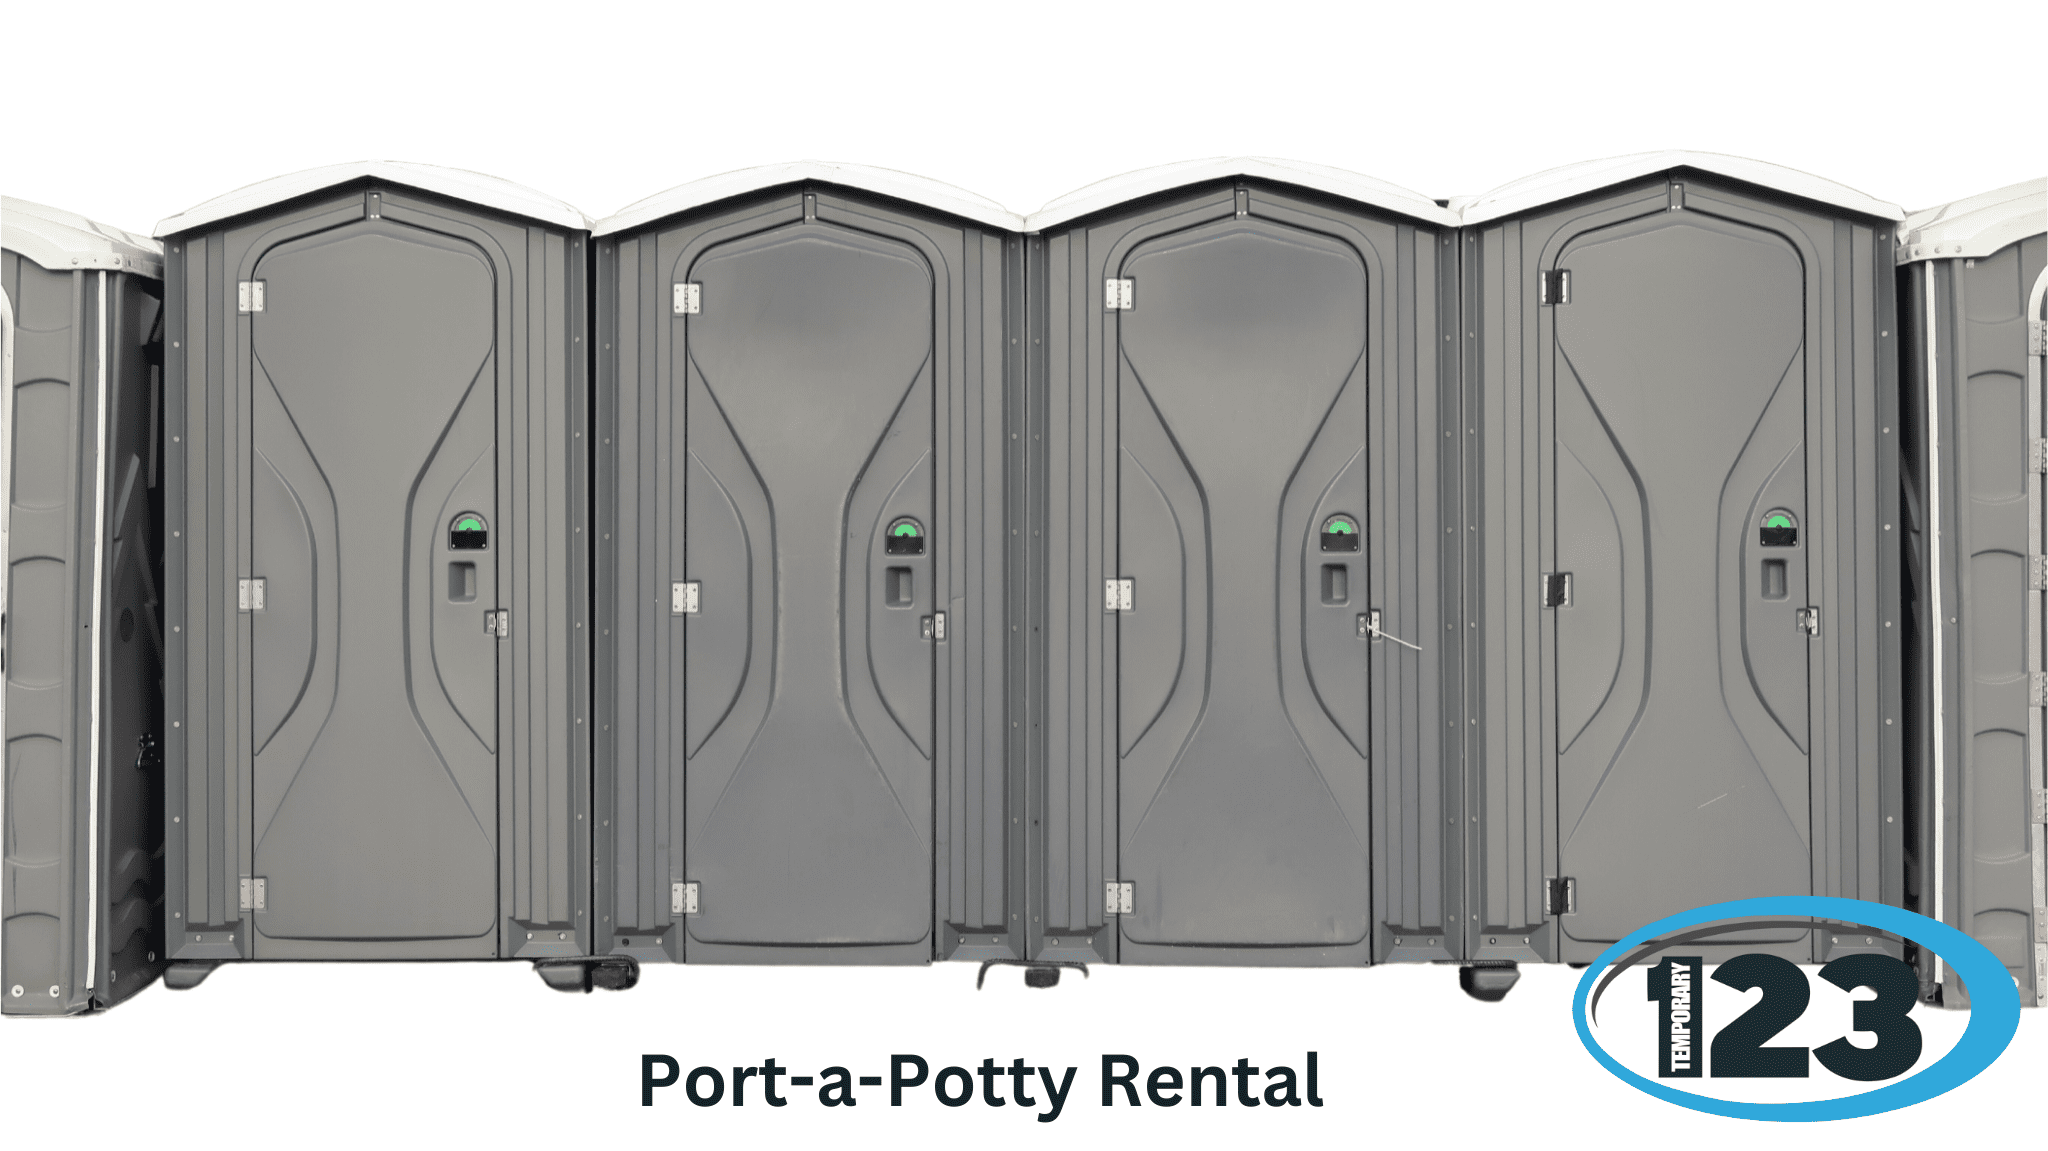 Port-a-Potty Rental